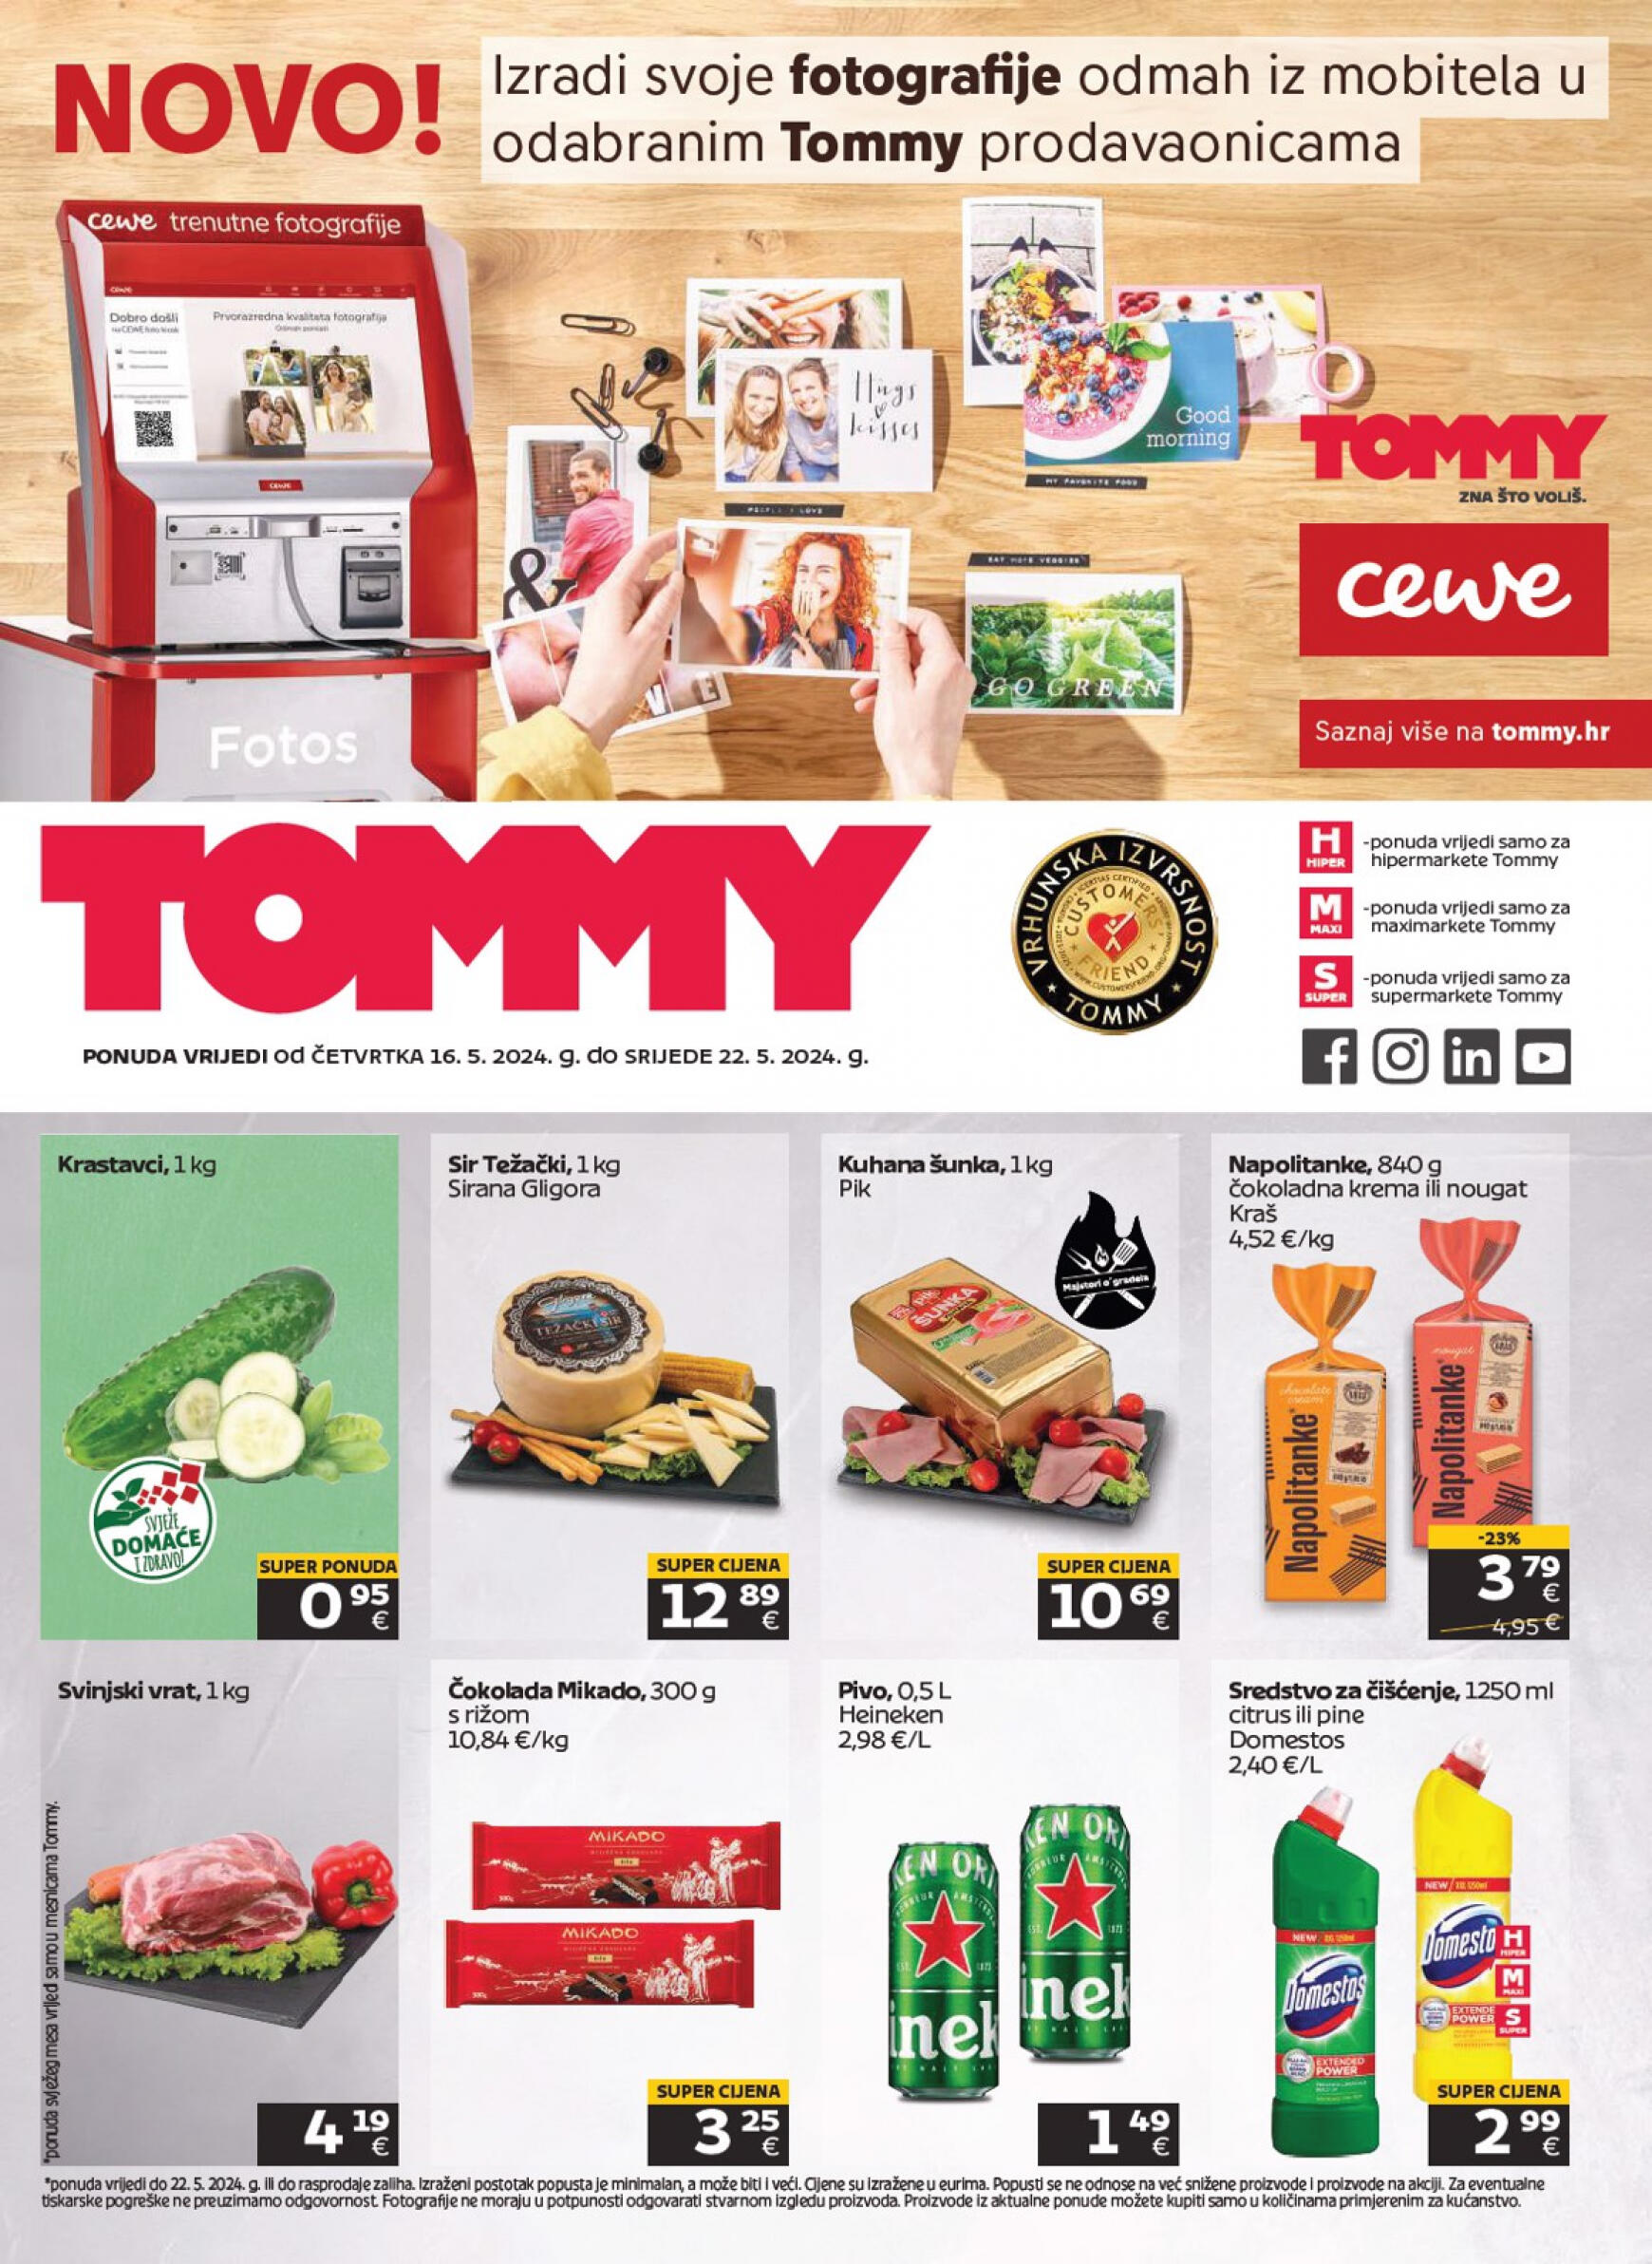 tommy - Novi katalog Tommy 16.05. - 22.05. - page: 1